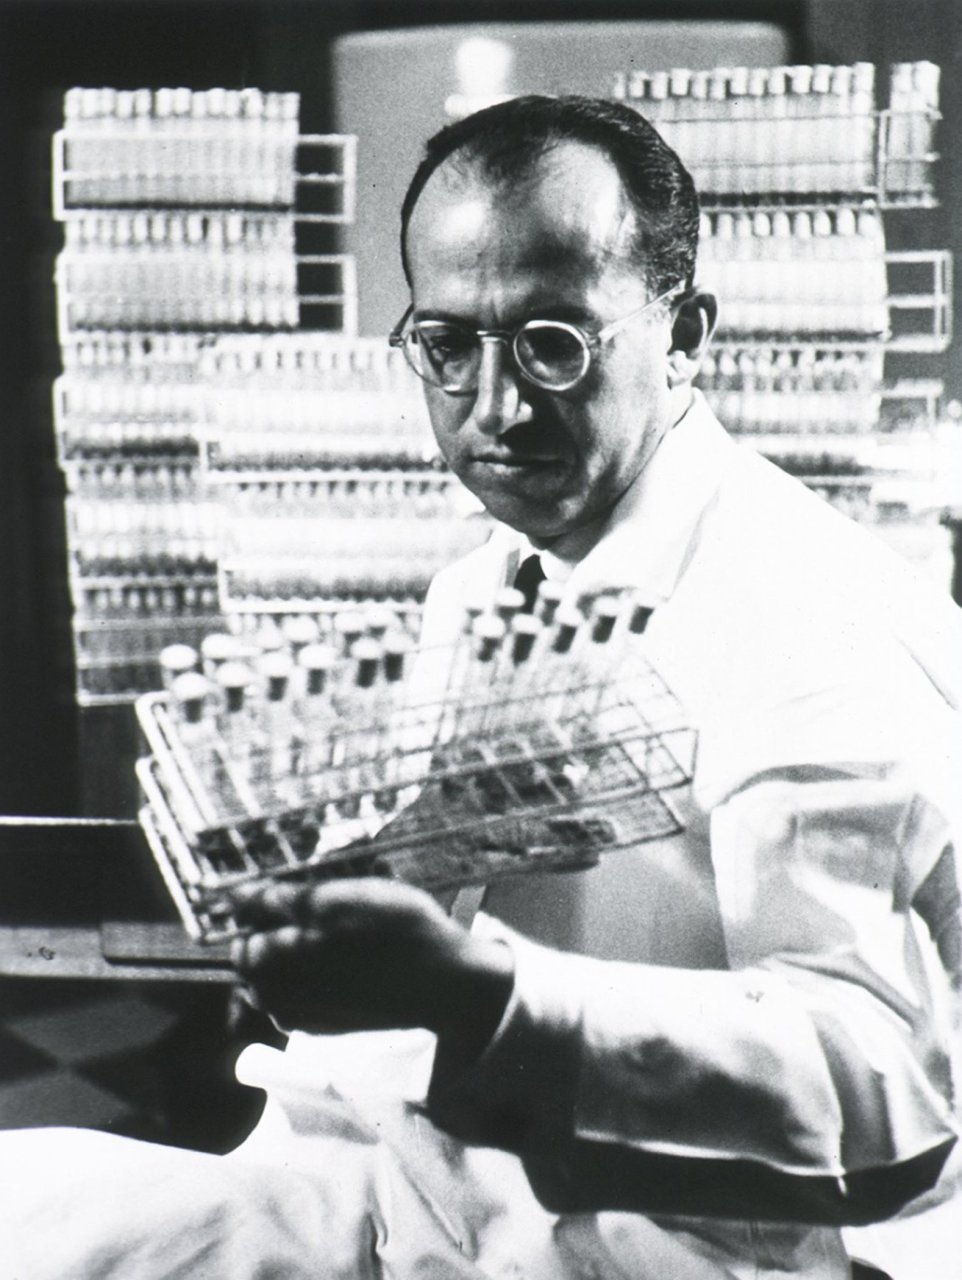 Jonas Salk gilt als Vater der Polio-Impfung. In den zwei Jahren, bevor der Impfstoff allgemein verfügbar war, betrug die durchschnittliche Zahl der Polio-Fälle in den USA mehr als 45.000. Bis 1962 war diese Zahl auf 910 gesunken. 